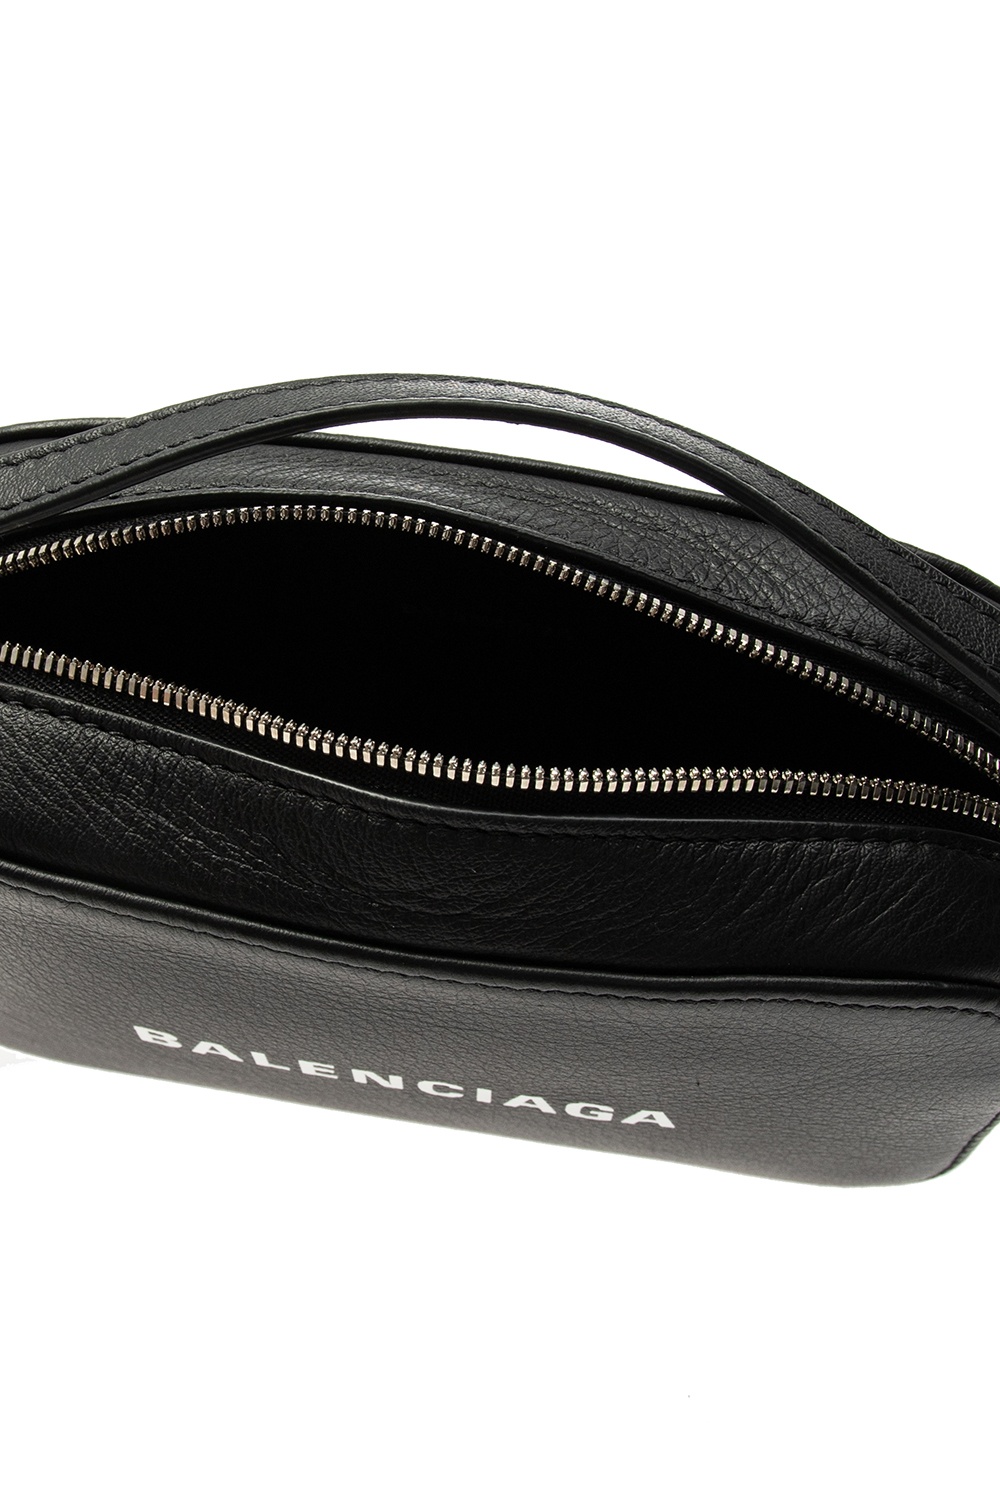 BALENCIAGA: Everyday Camera Bag In Leather Black Balenciaga Mini Bag ...